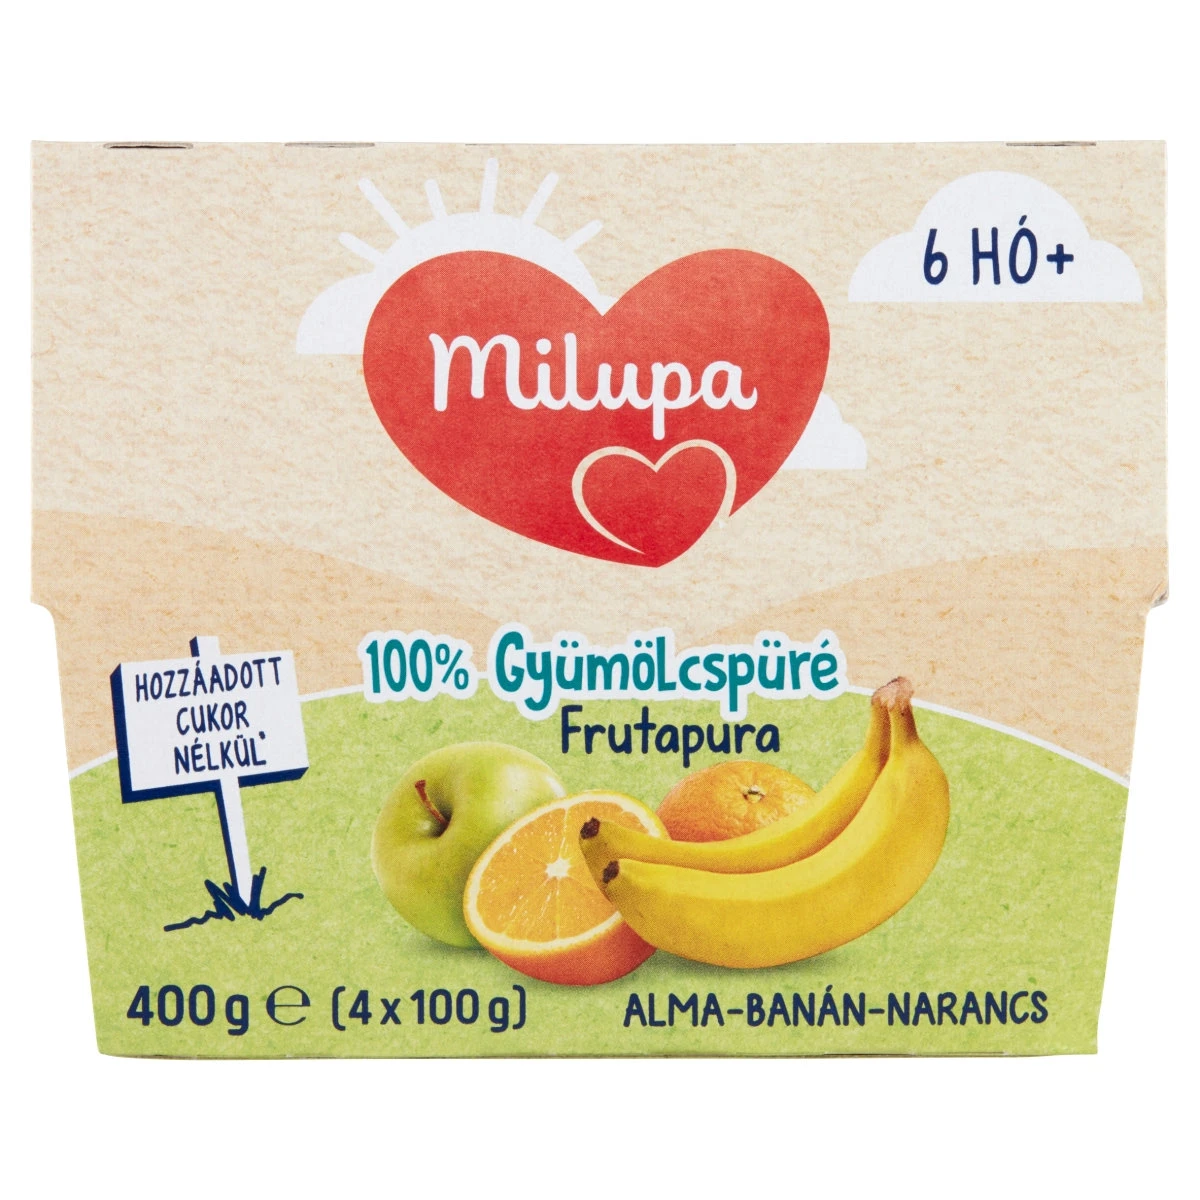 Milupa Frutapura alma-banán-narancs 100% gyümölcspüré 6 hó+ 4 x 100 g (400 g)